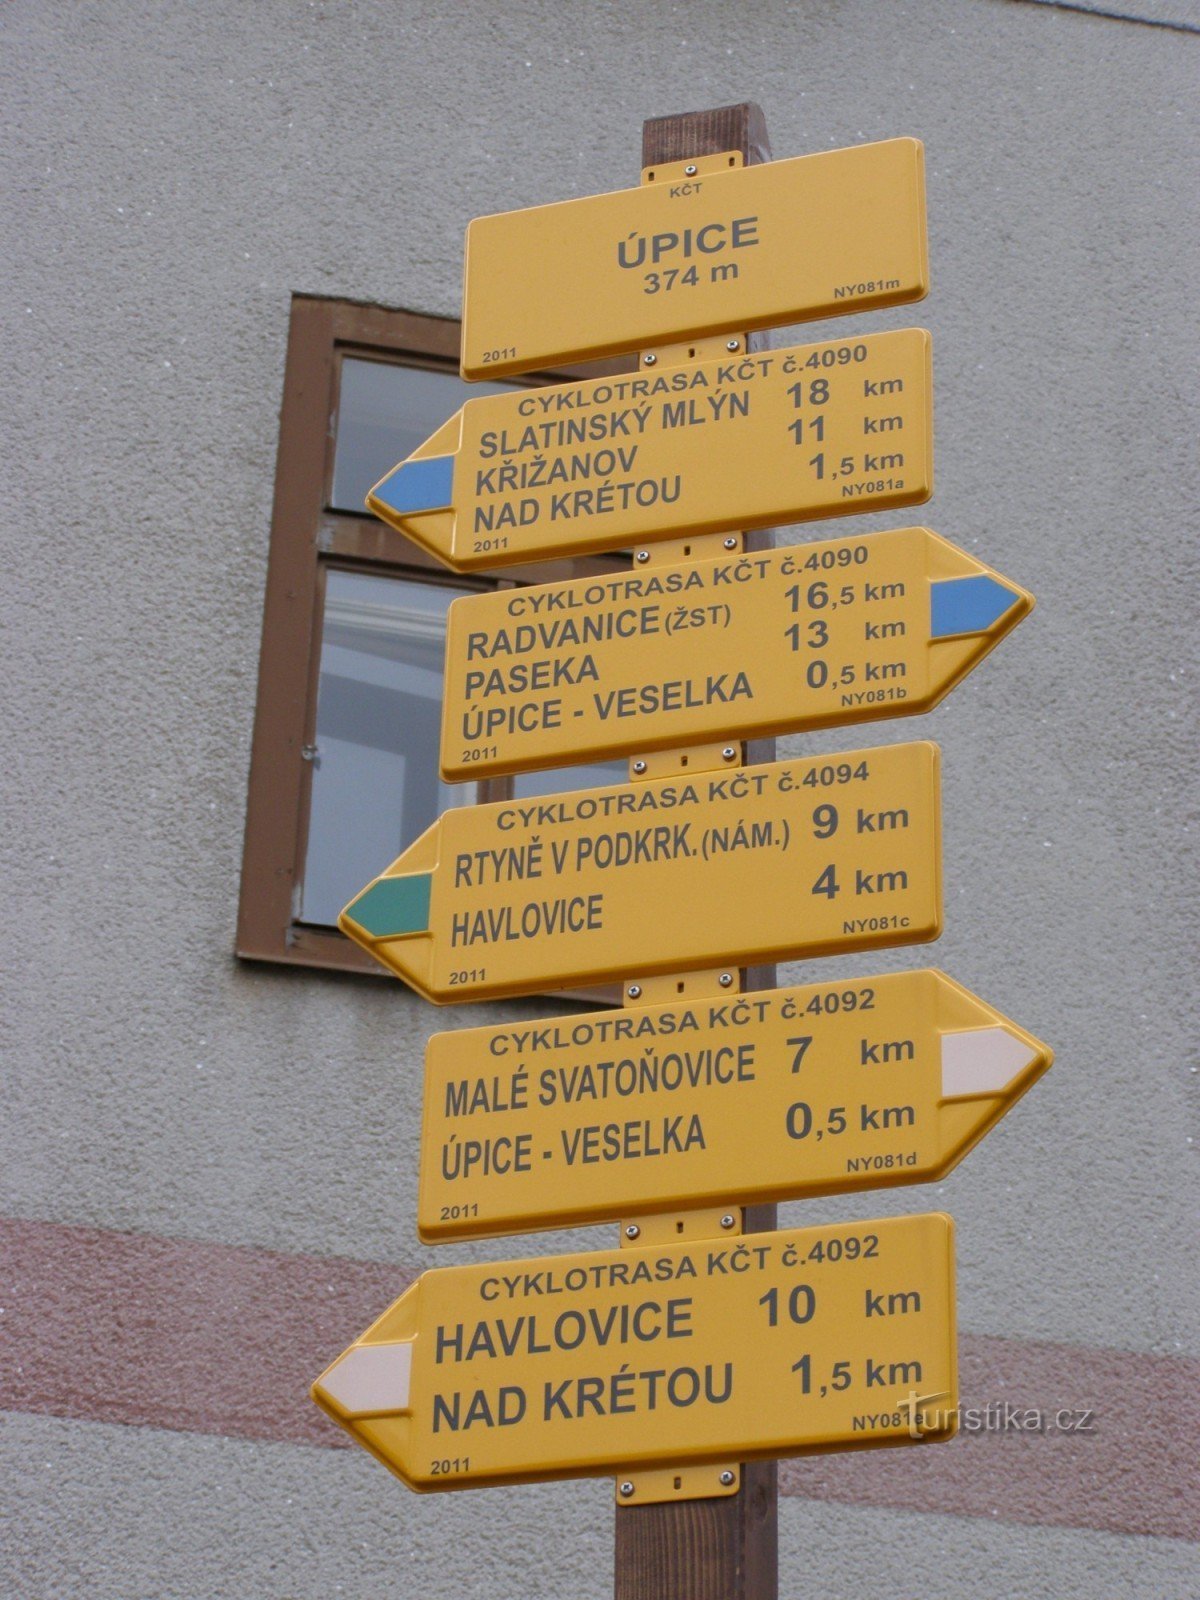 węzeł turystyki rowerowej Úpice - plac TG Masaryka